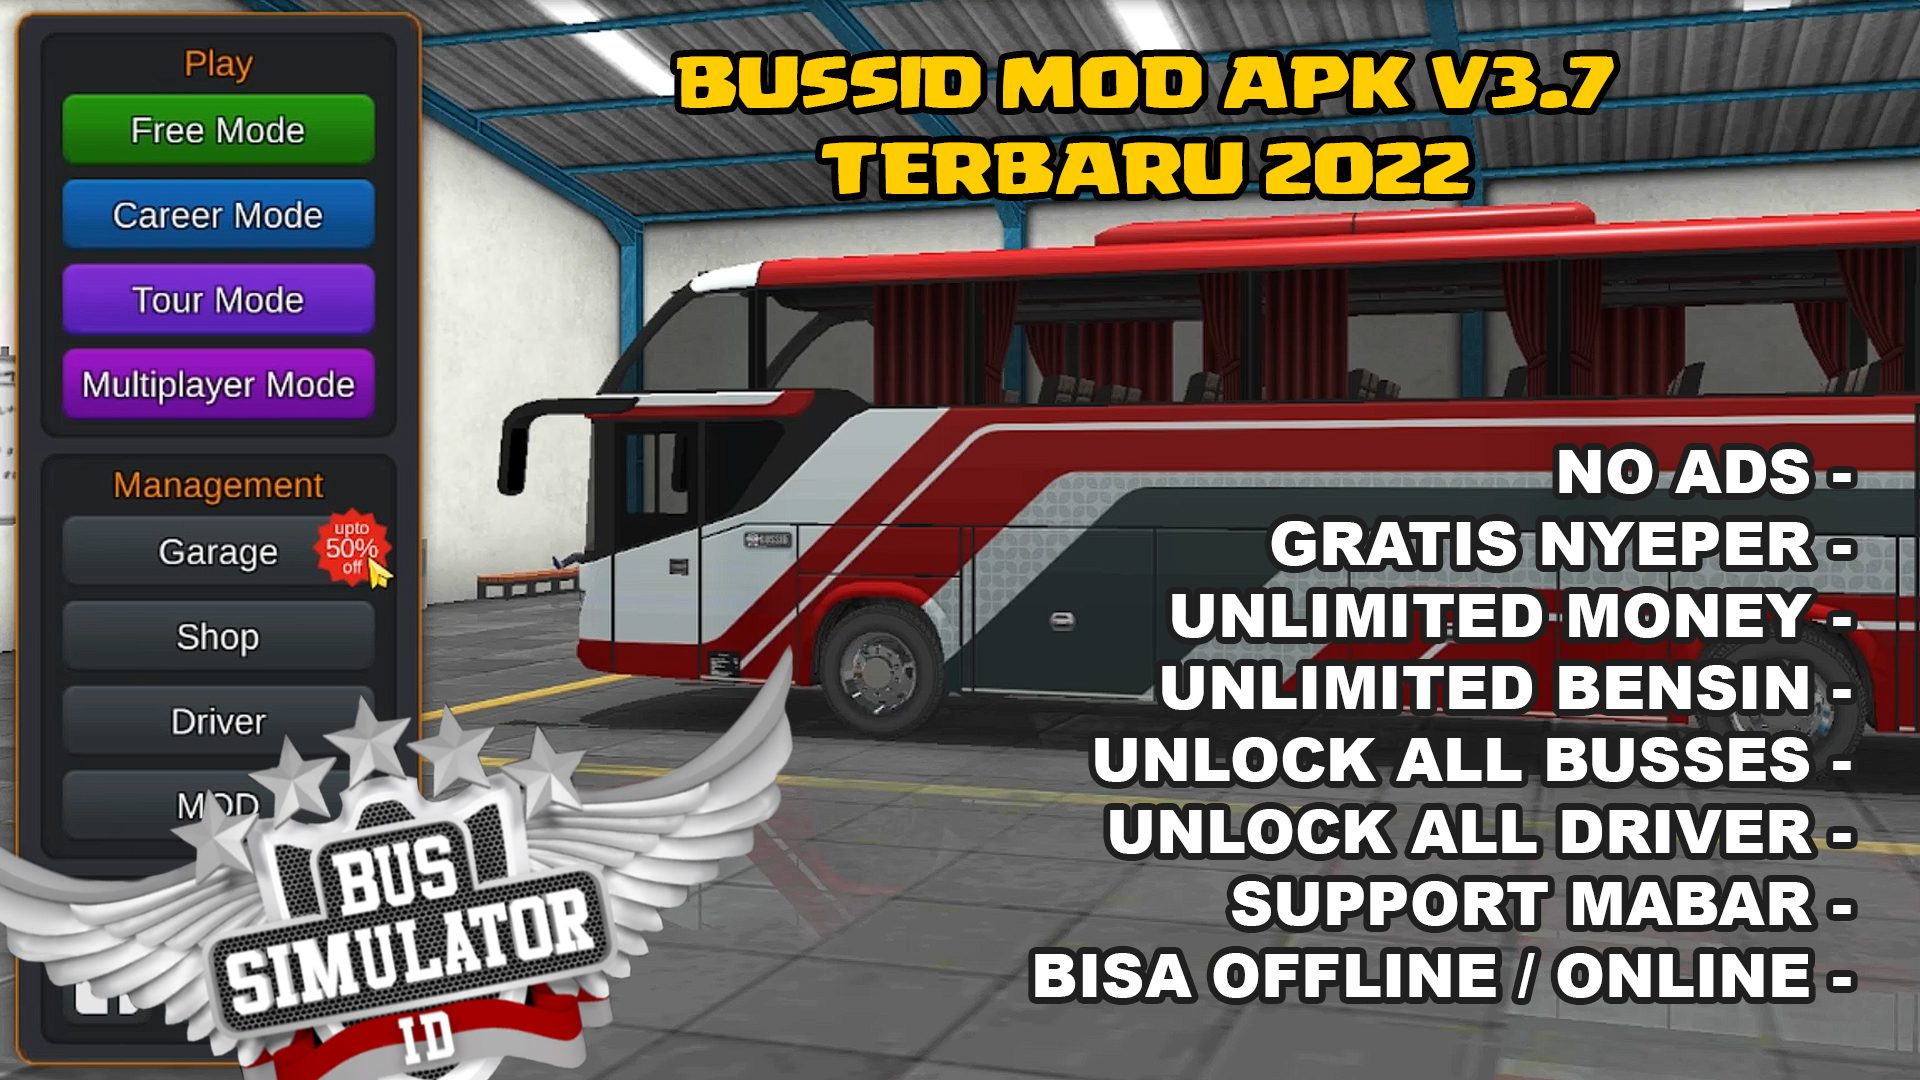 Download Mod Apk Bussid v3.7